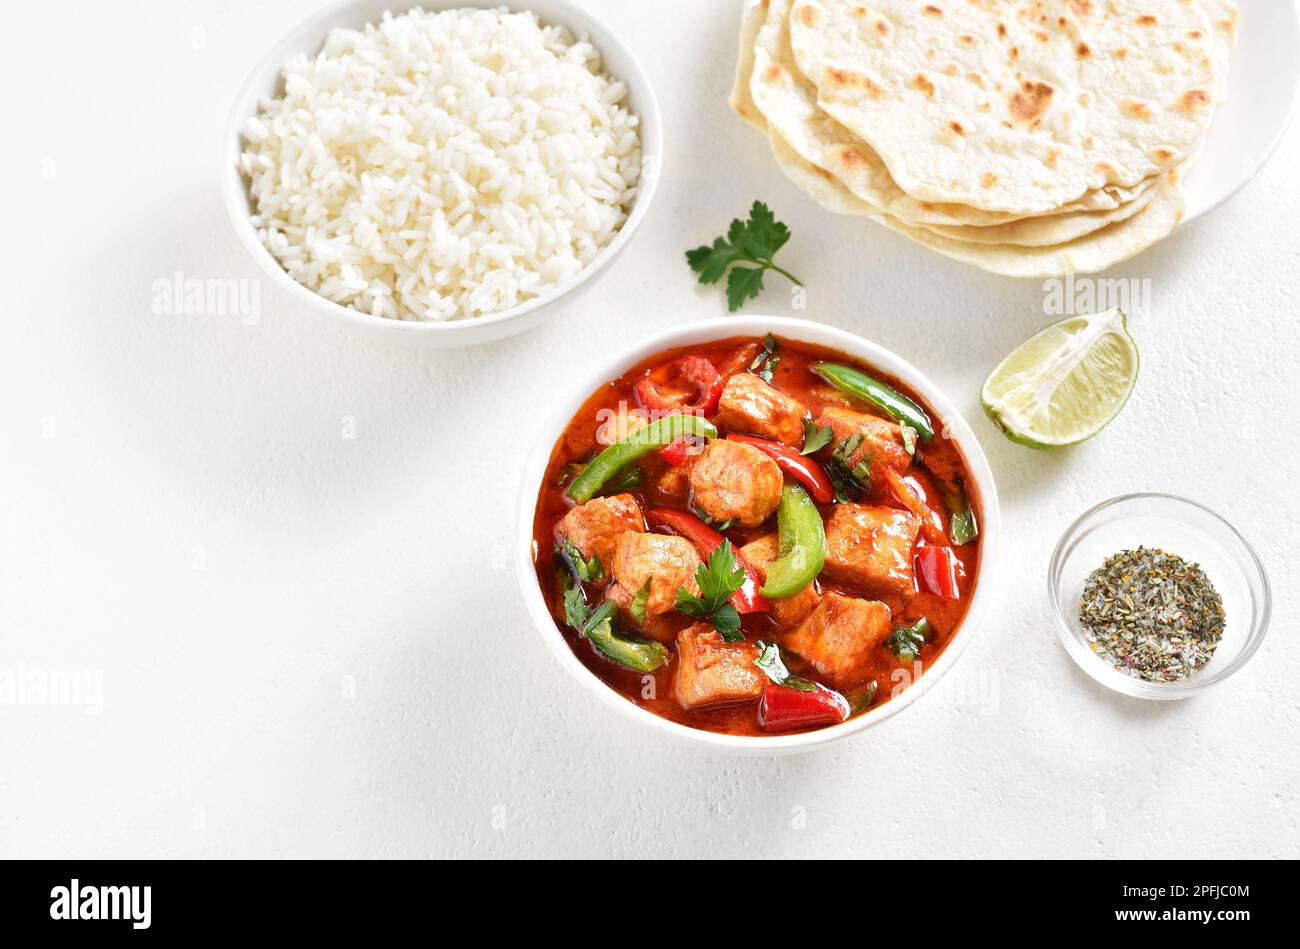 Curry de pollo rojo estilo tailandés con verduras en tazón sobre fondo blanco con espacio de texto libre. Foto de stock